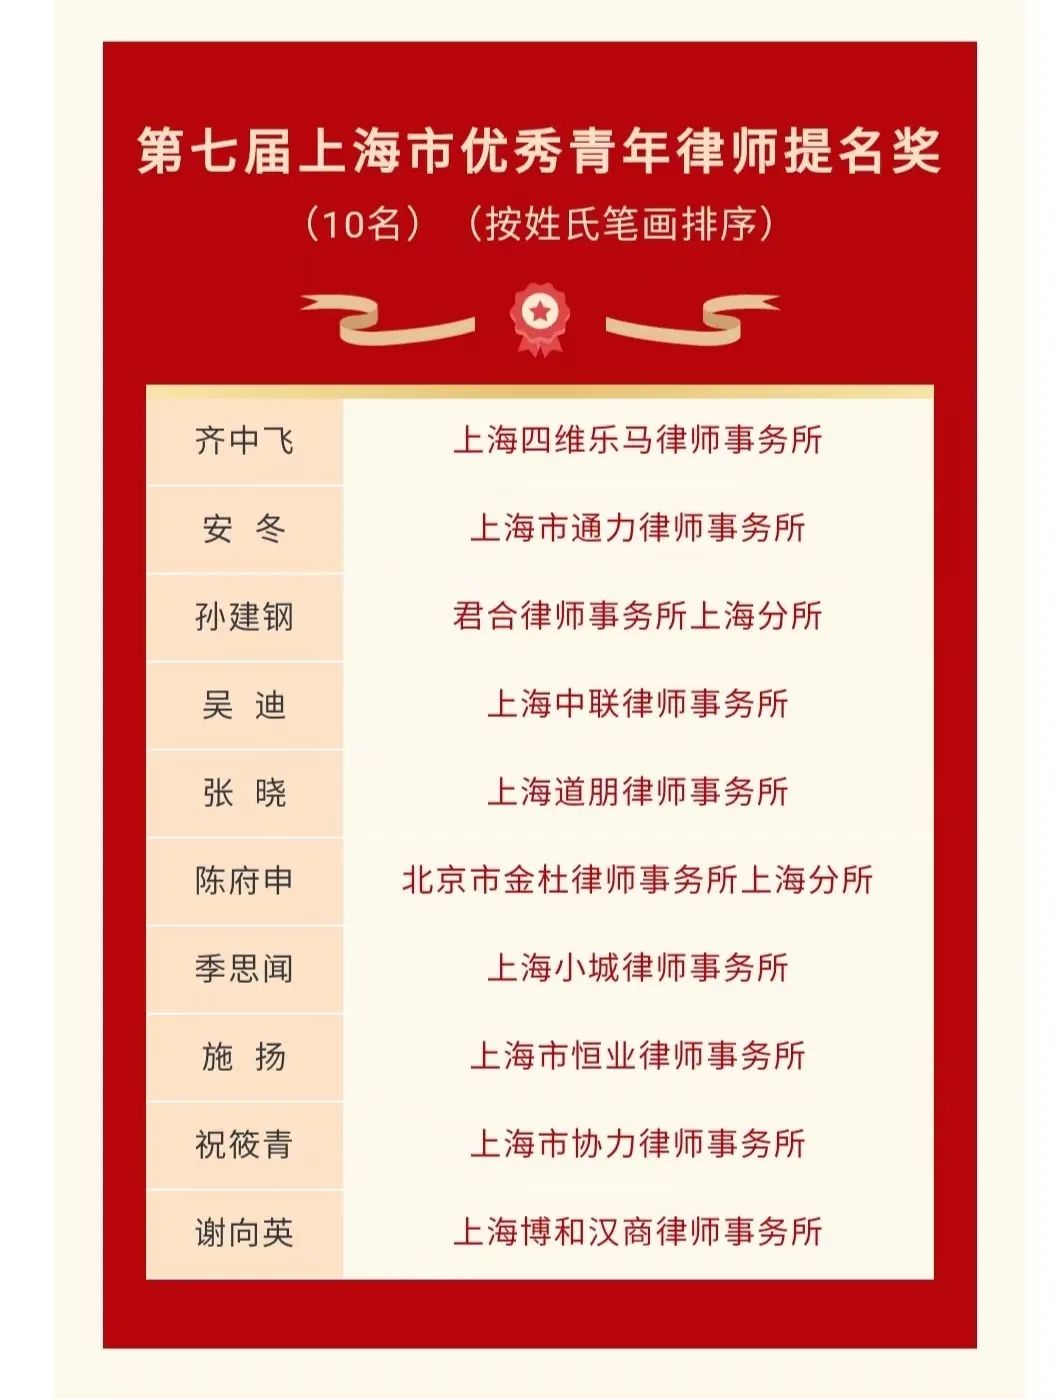 【资讯】博和汉商律师荣获“上海市优秀女律师”、“上海市优秀青年律师提名“称号